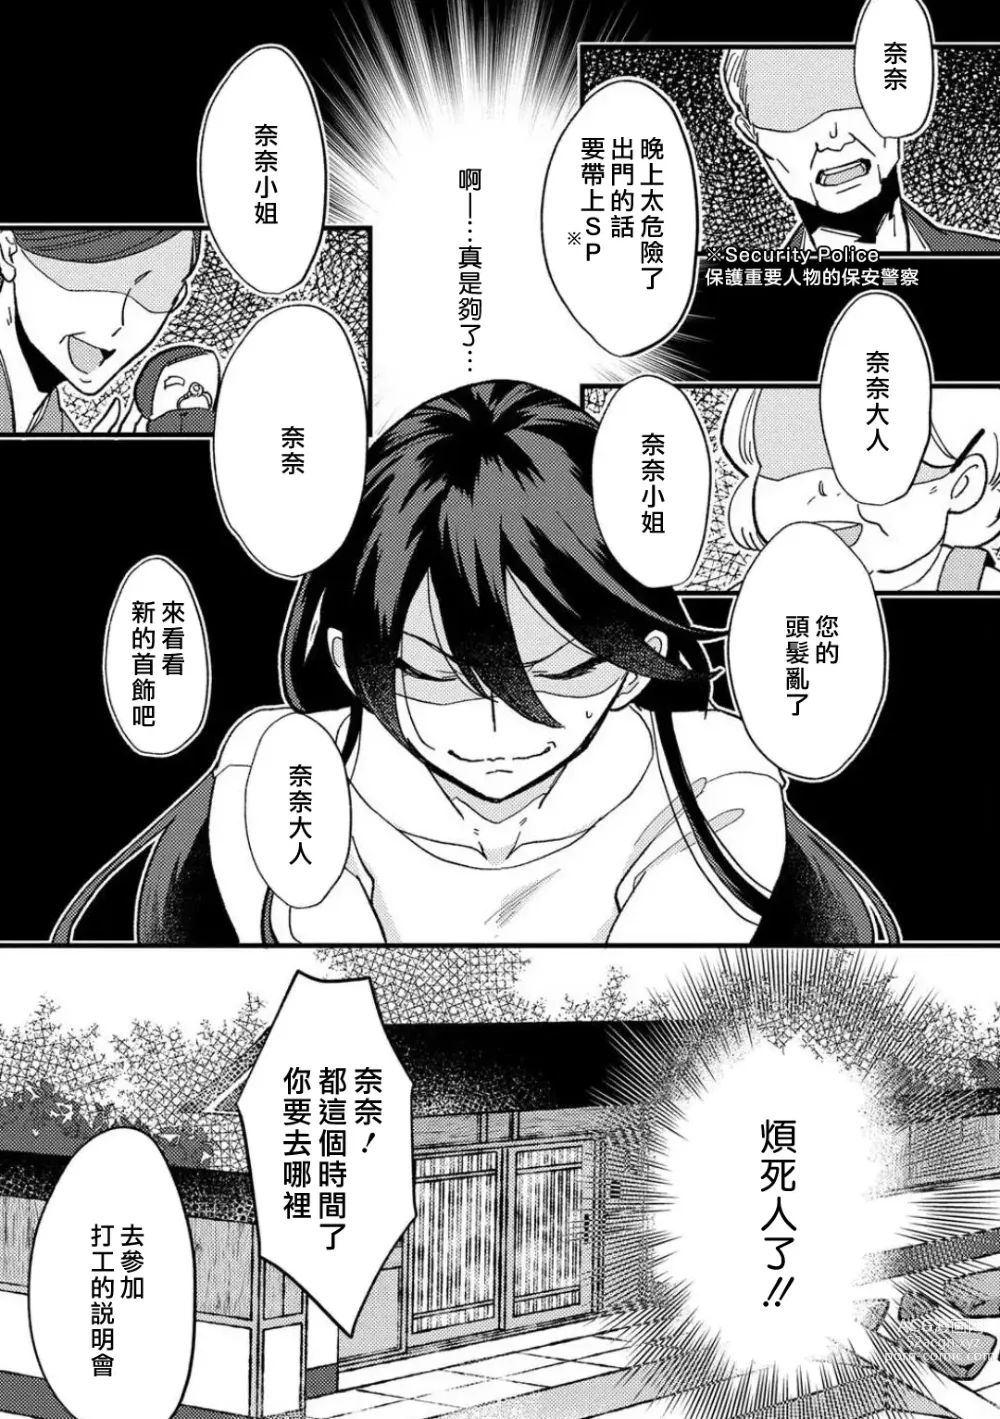 Page 5 of manga 败在他的眼泪攻势下 奈奈大小姐想被哭唧唧的男子推倒！ 1-5